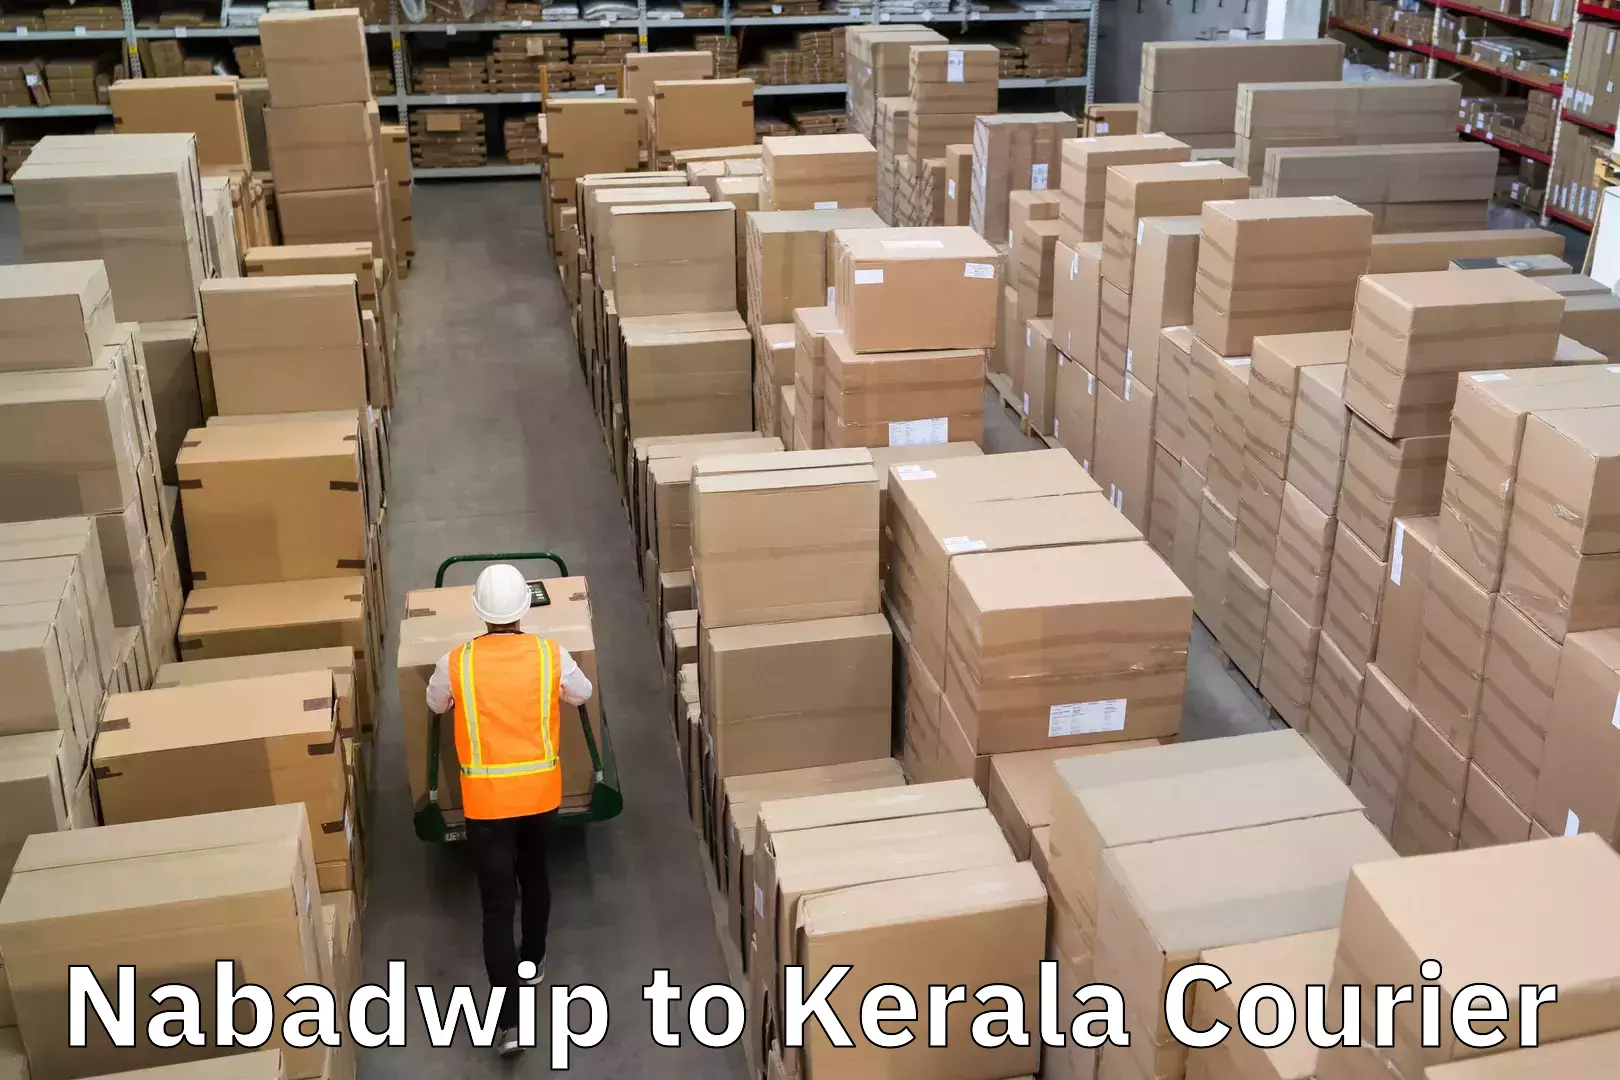 Door-to-door freight service Nabadwip to Kerala